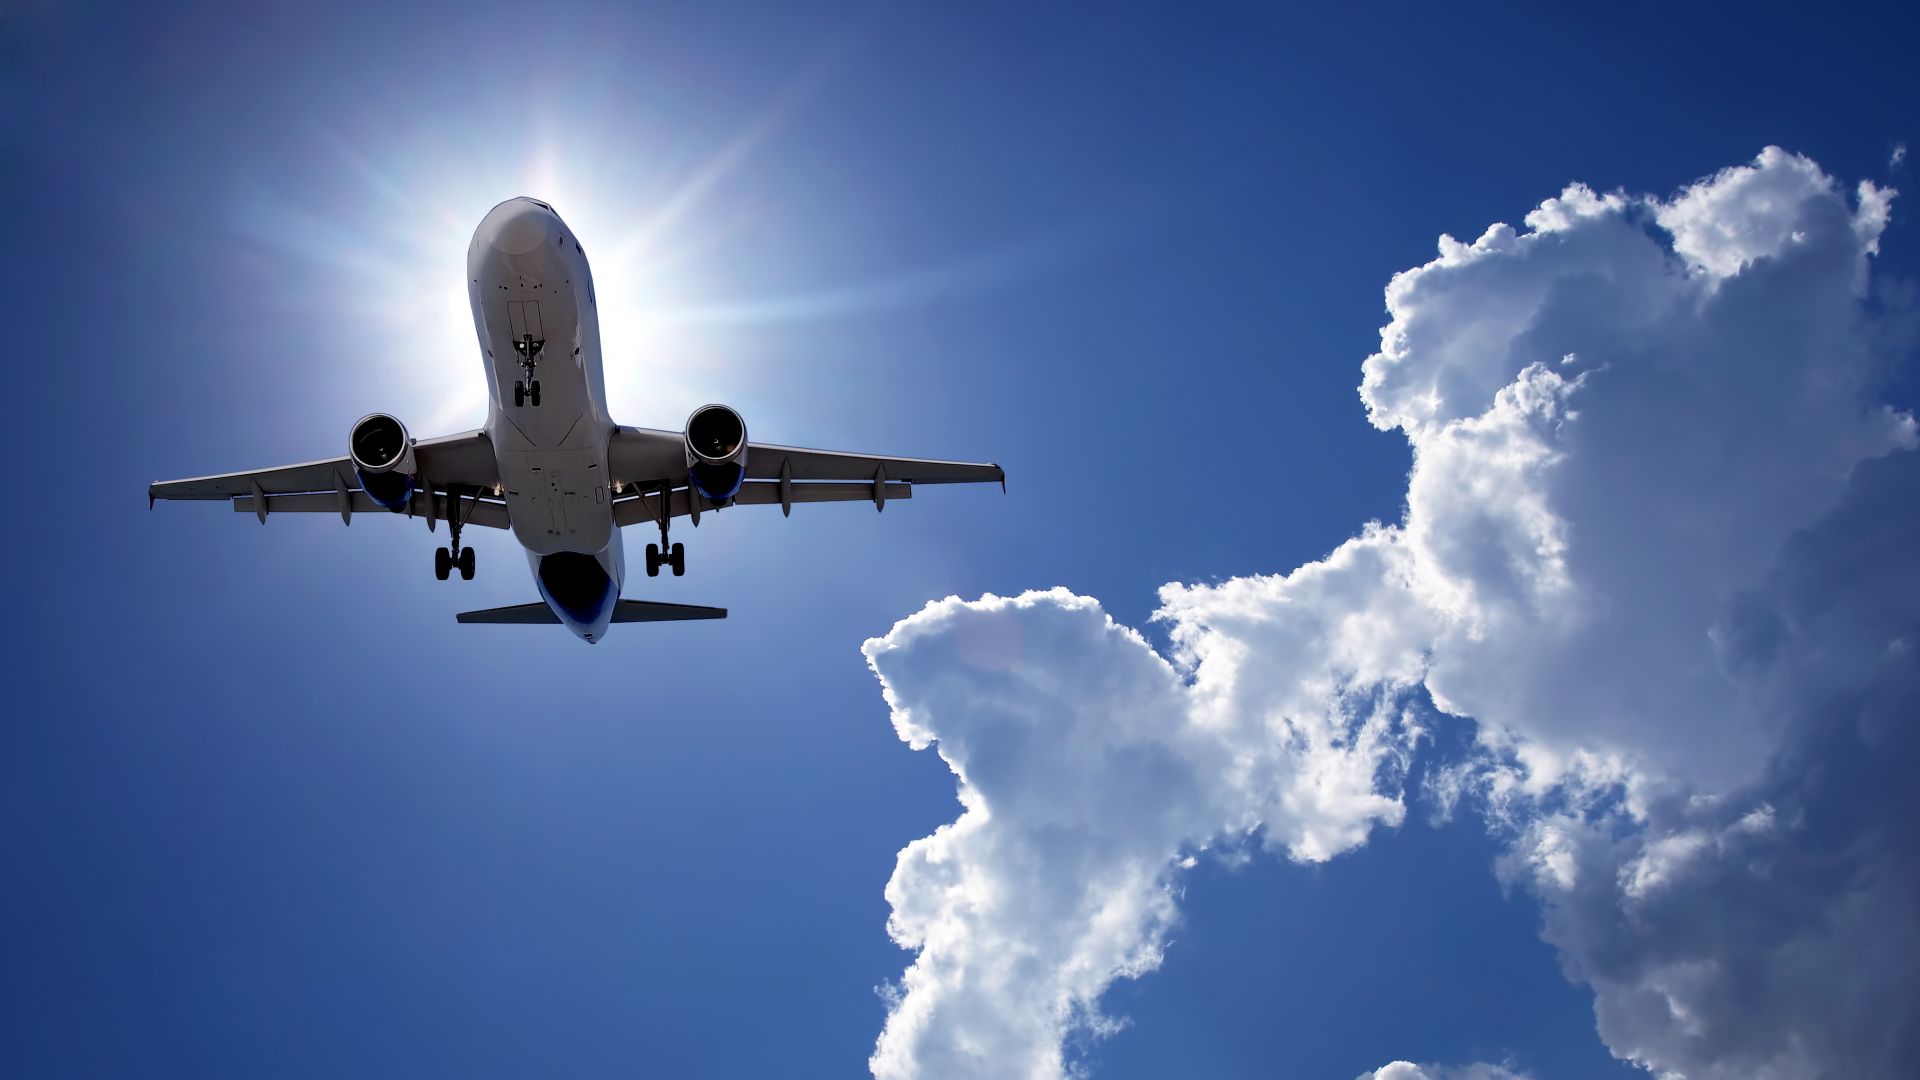 Passenger plane flying in blue sky